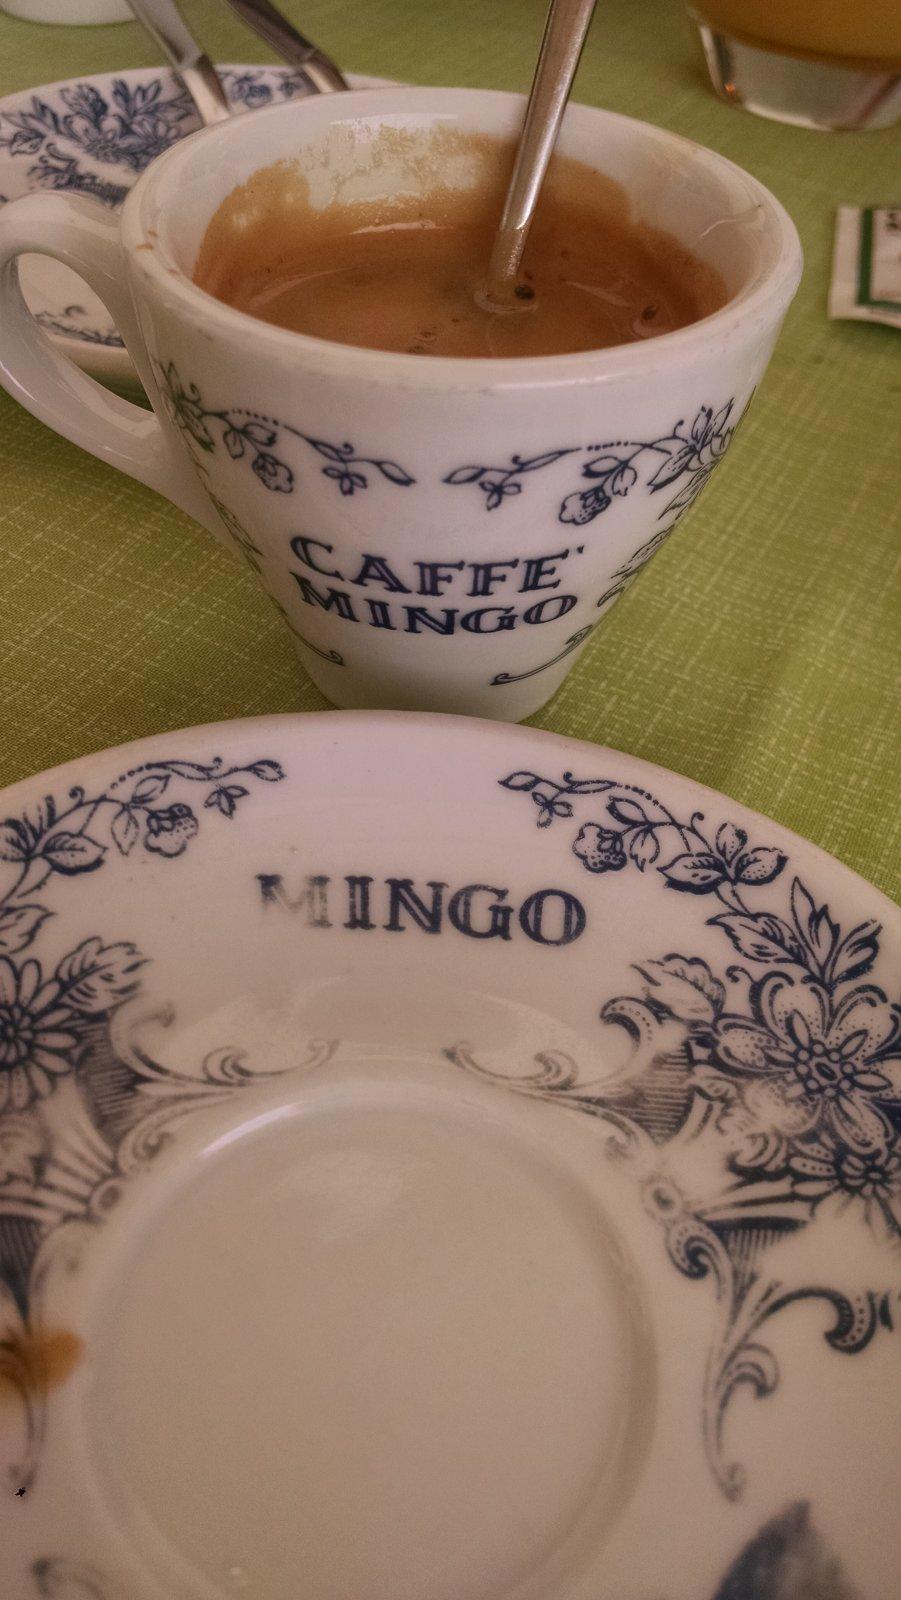 Caffé Mingo